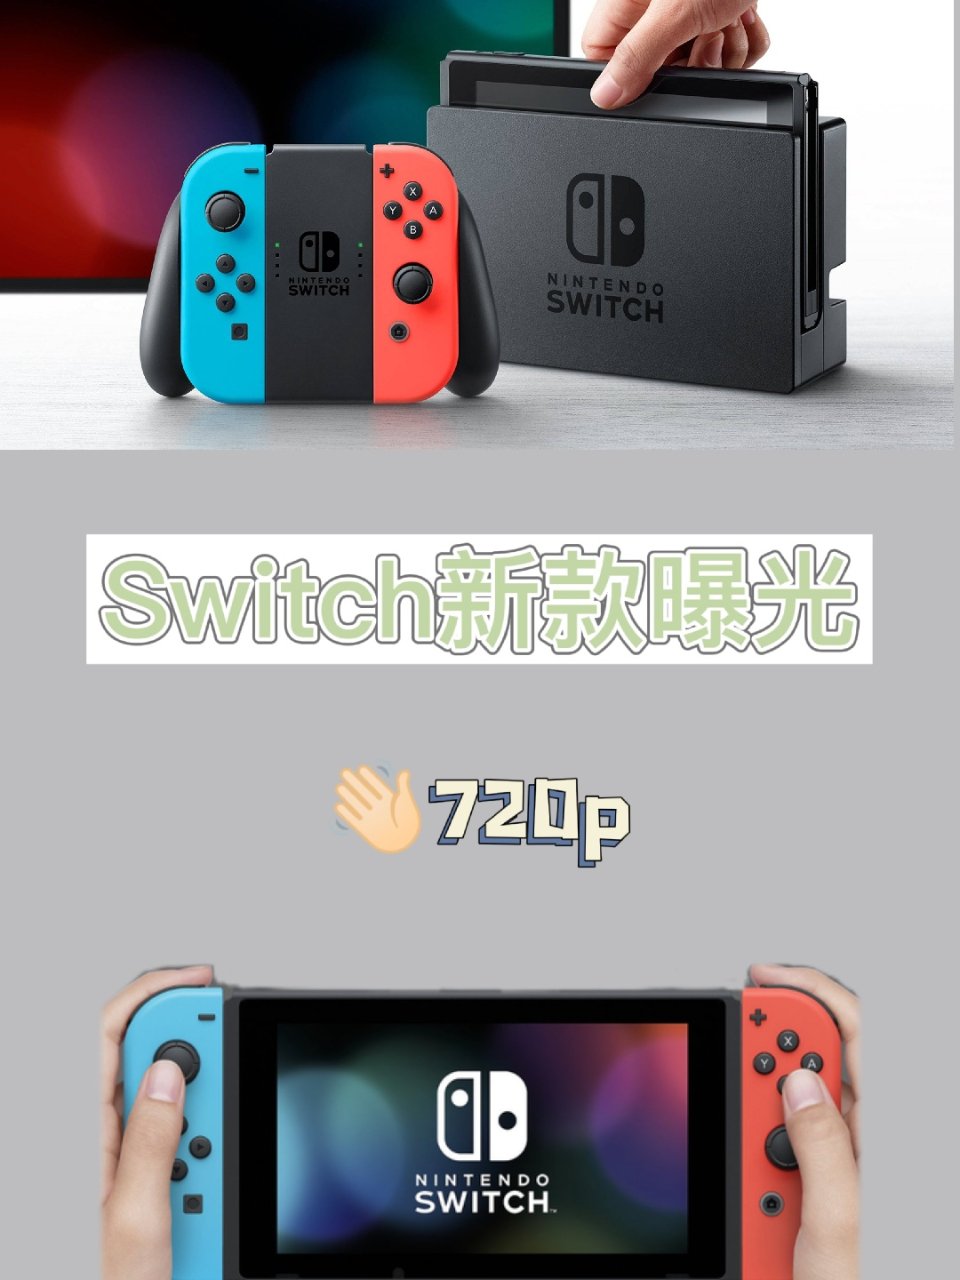 拜拜720p!!!新款Switch将有4...